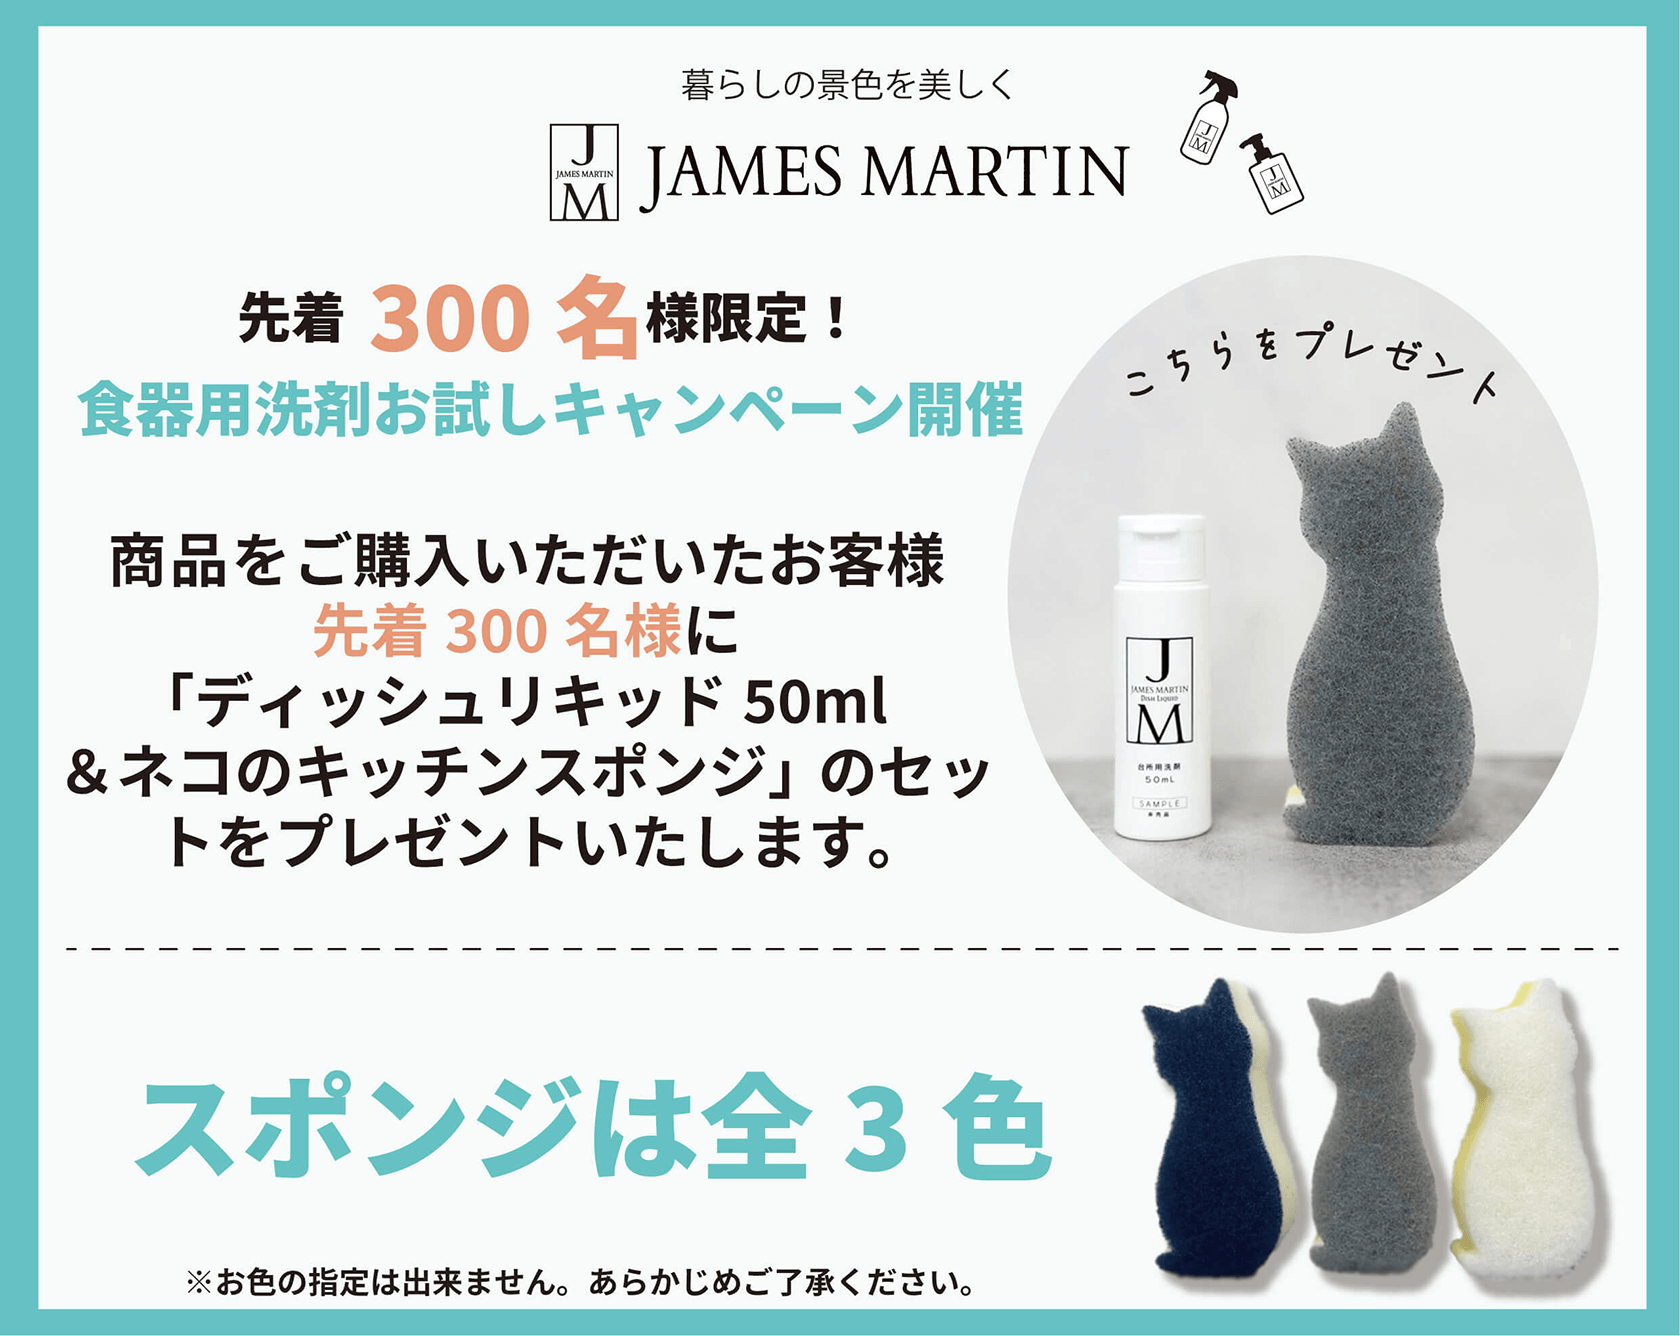 「ディッシュリキッド50ml＆ネコのキッチンスポンジ」のセットをプレゼントするキャンペーン